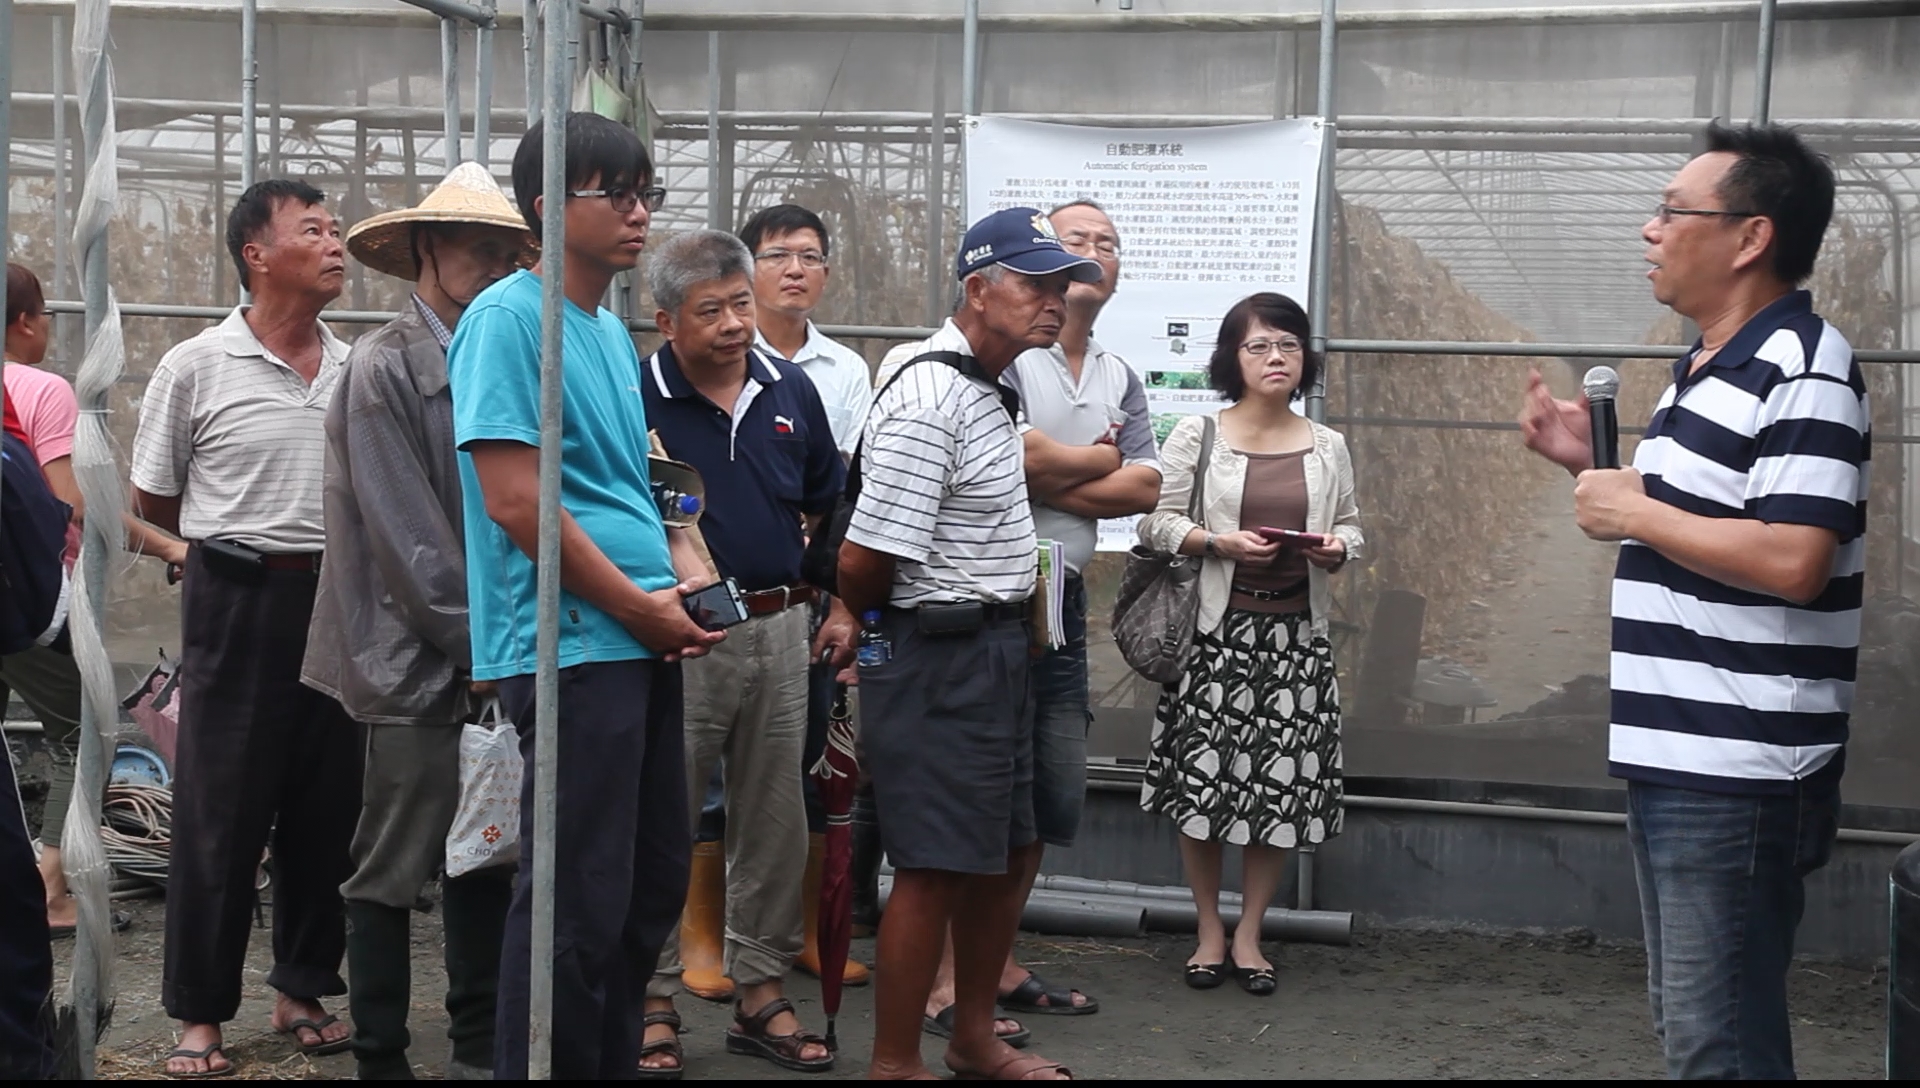 臺中區農業改良場研究人員介紹設施節水灌溉技術